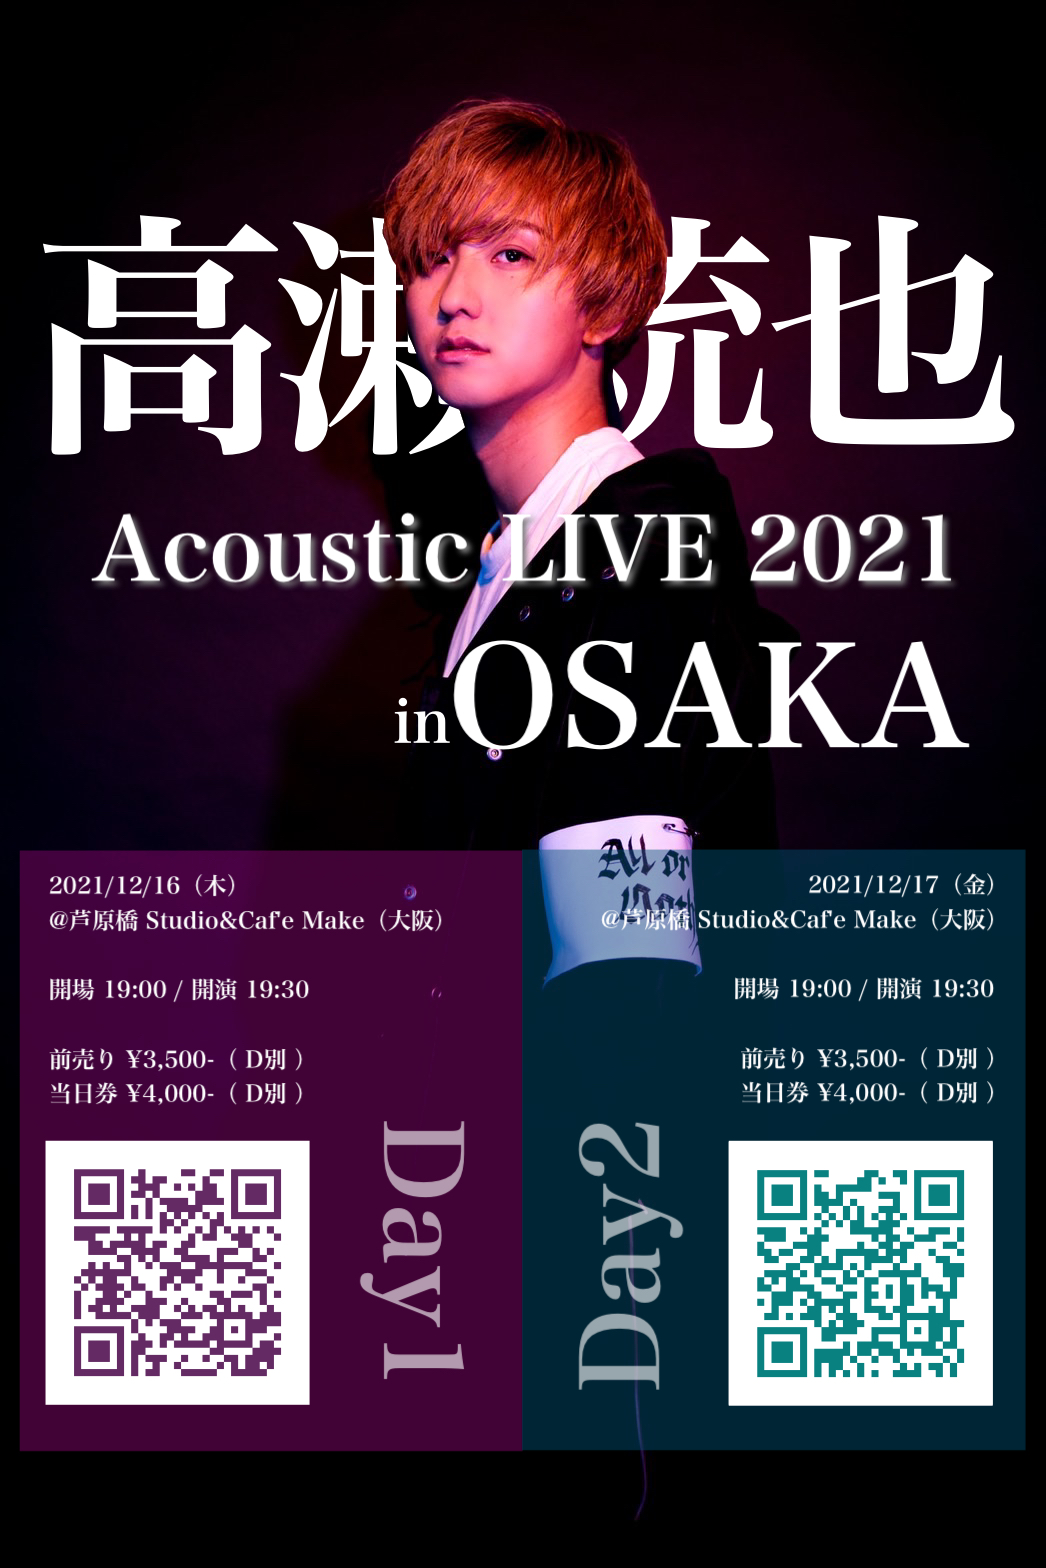 高瀬統也 Acoustic LIVE 2021 in OSAKA【Day1】一般チケット